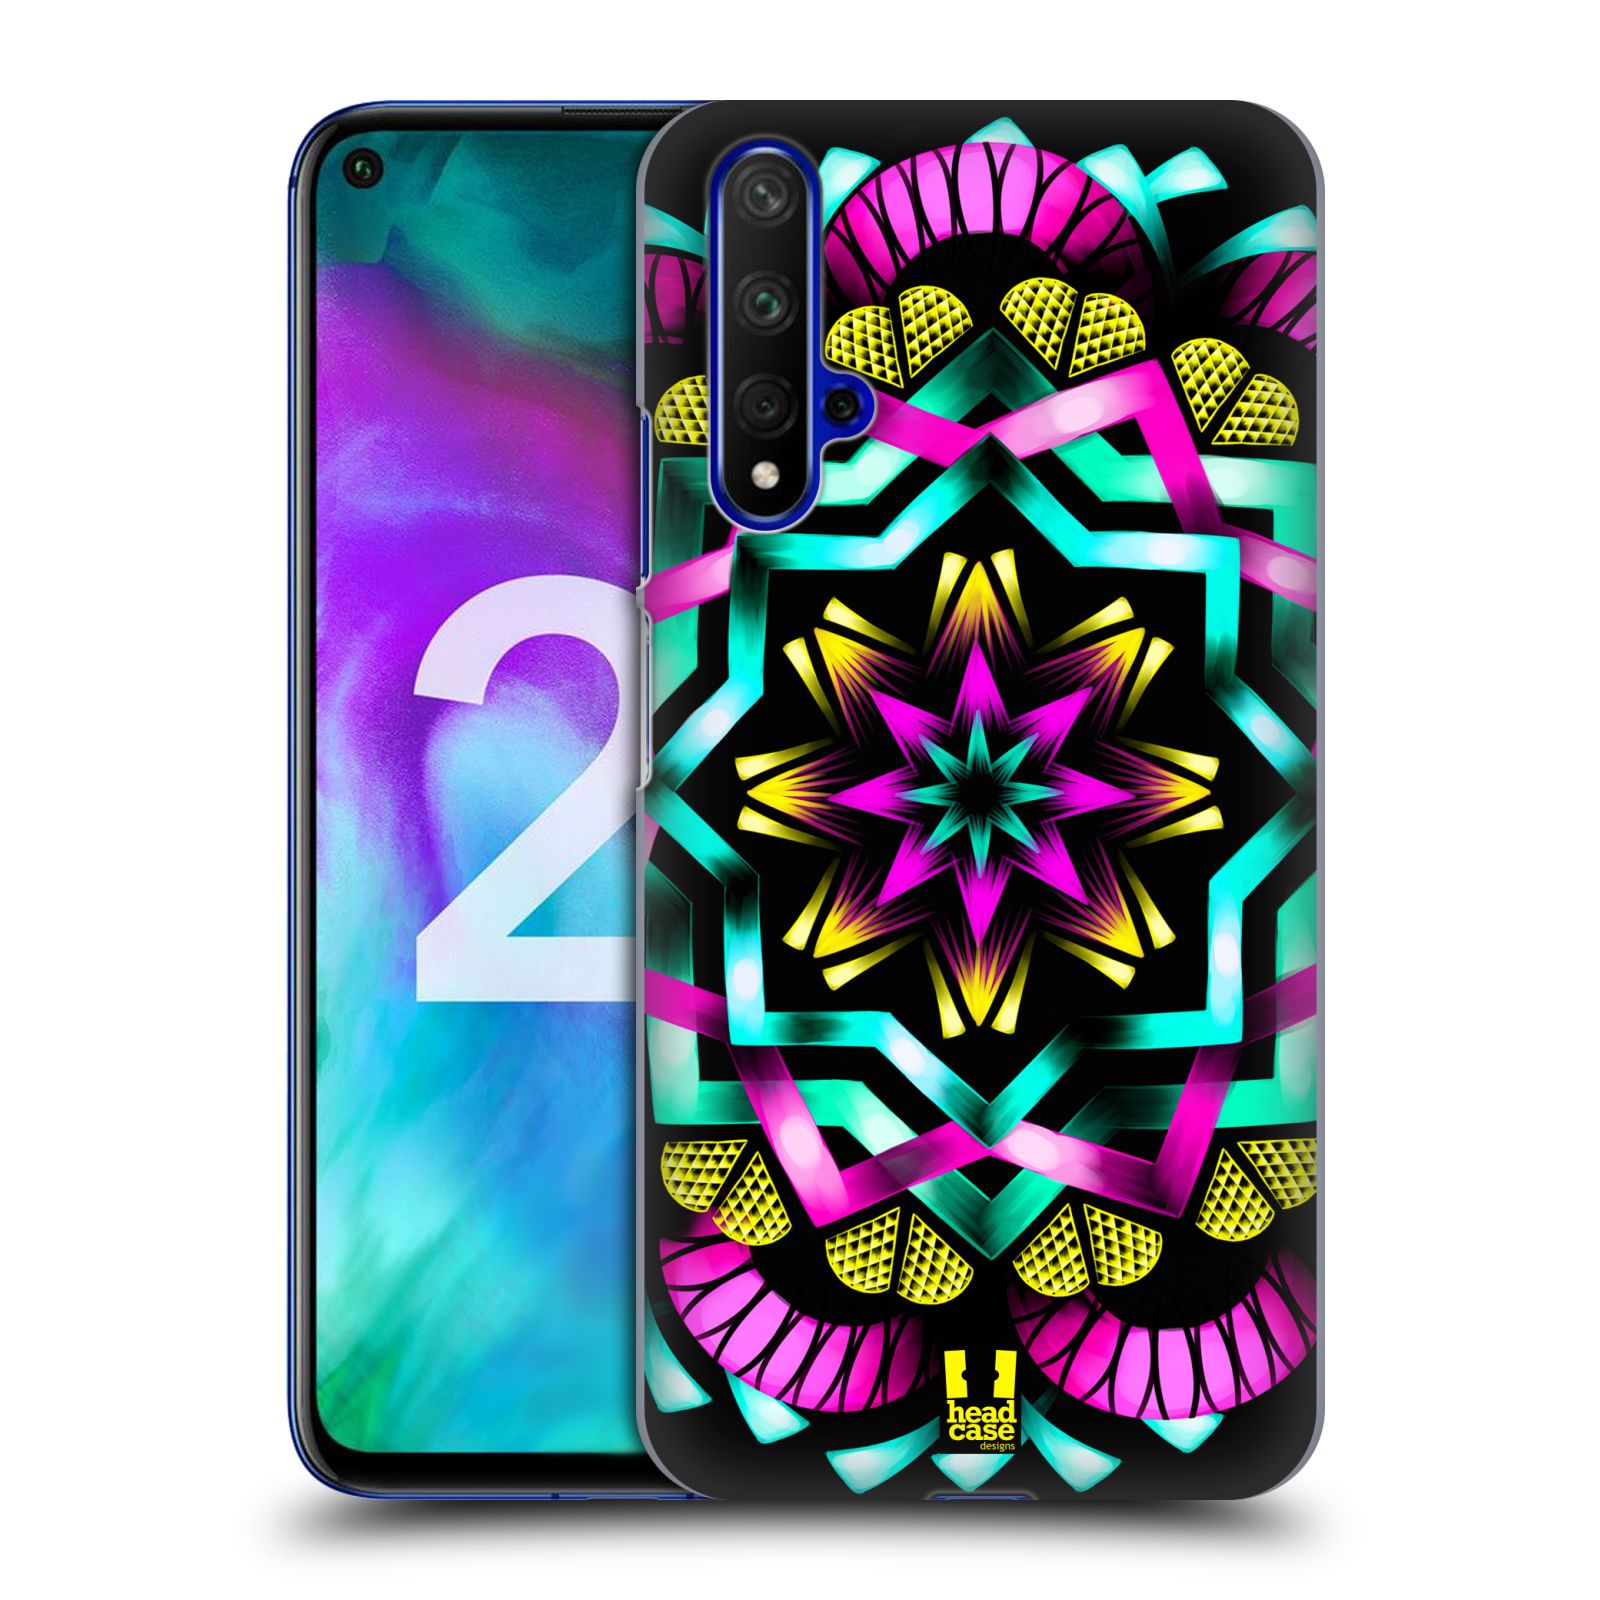 Pouzdro na mobil Honor 20 - HEAD CASE - vzor Indie Mandala kaleidoskop barevný vzor SLUNCE